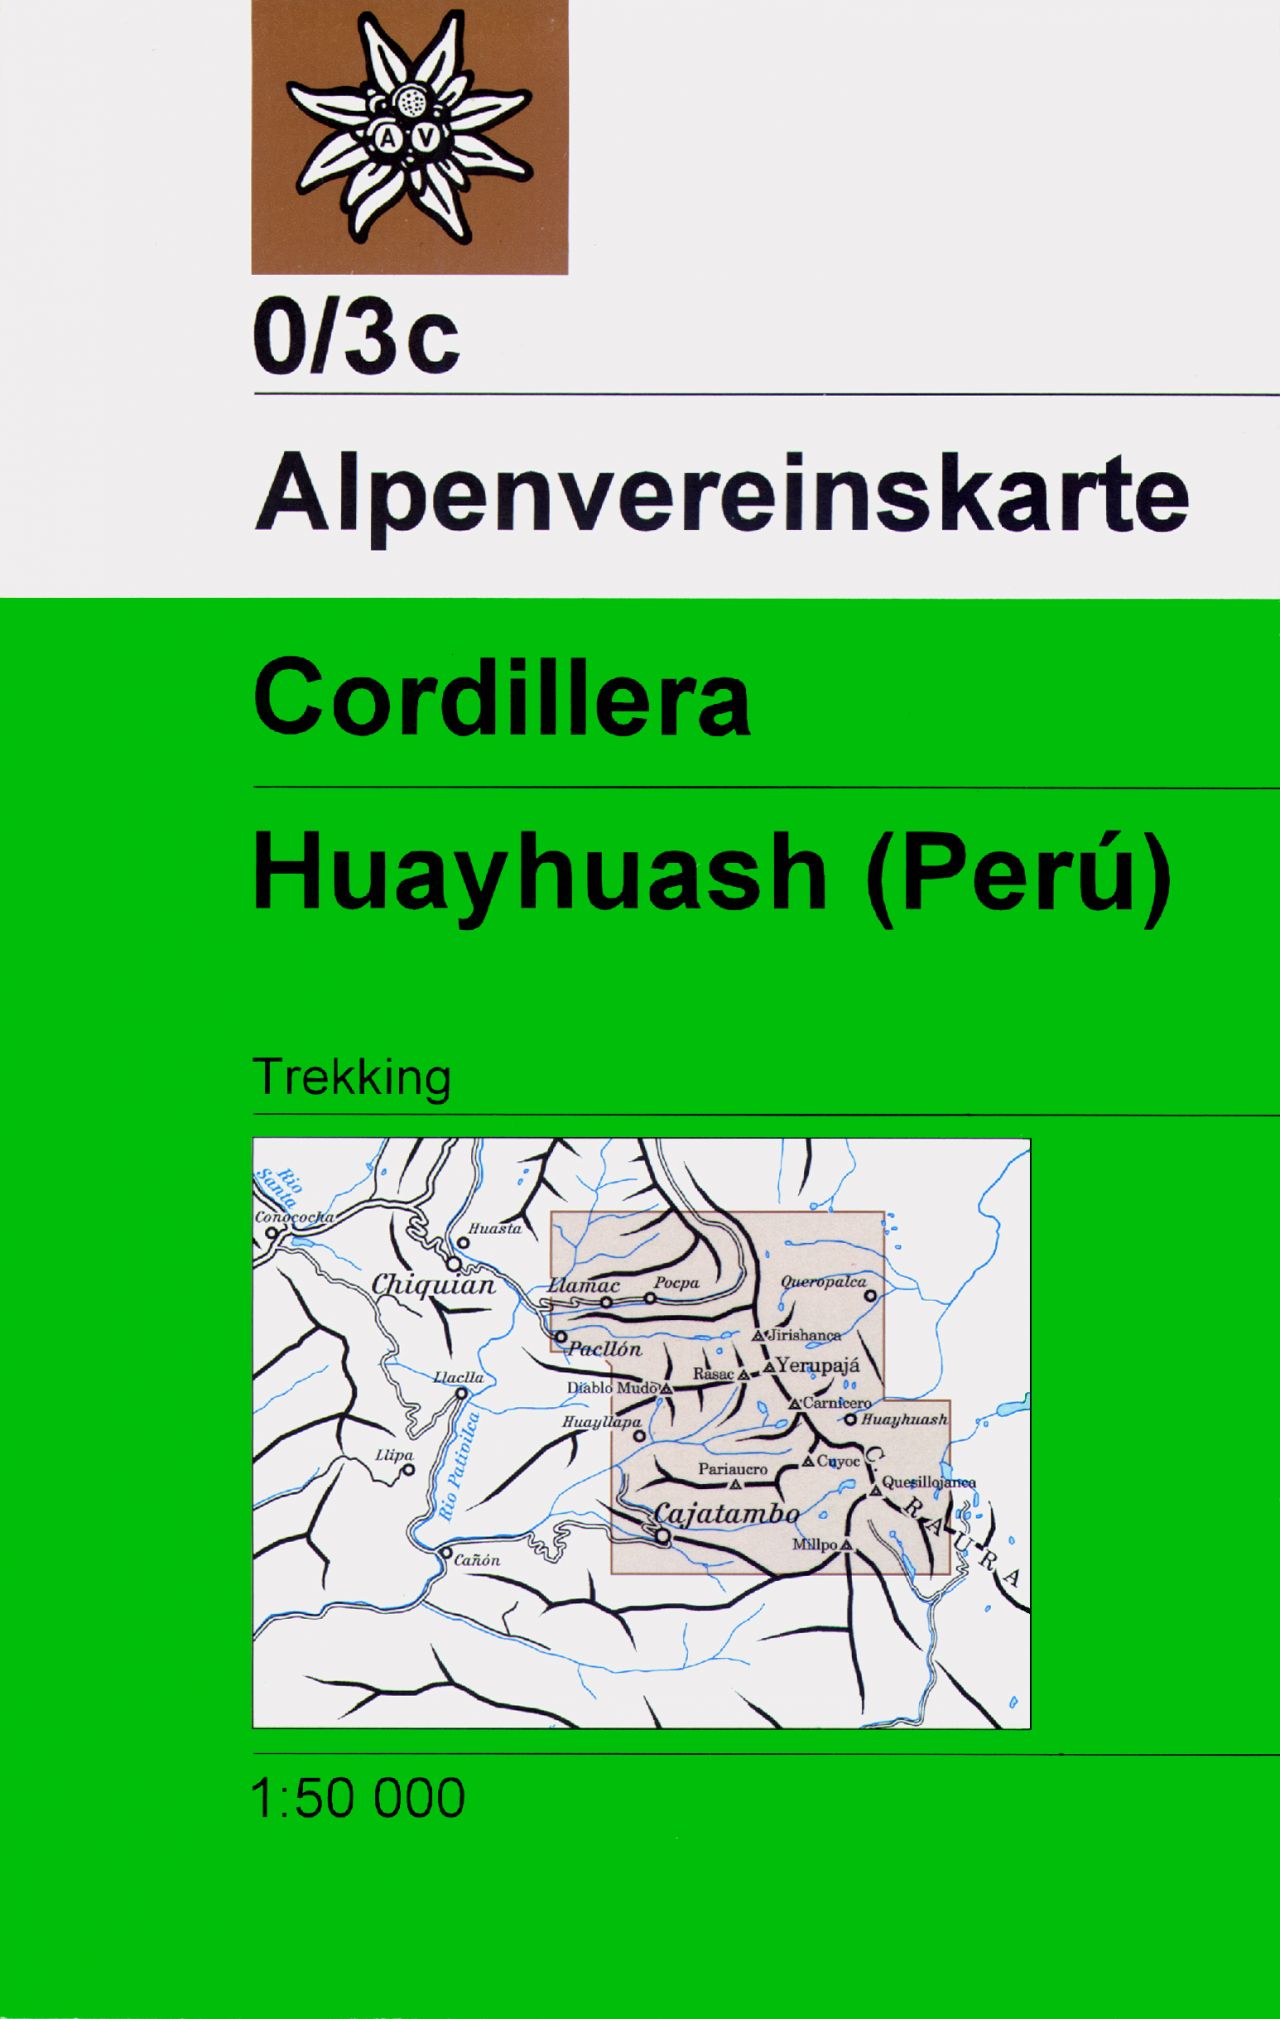 Online bestellen: Wandelkaart 0/3c Alpenvereinskarte Cordillera - Huayhuash - Peru | Alpenverein